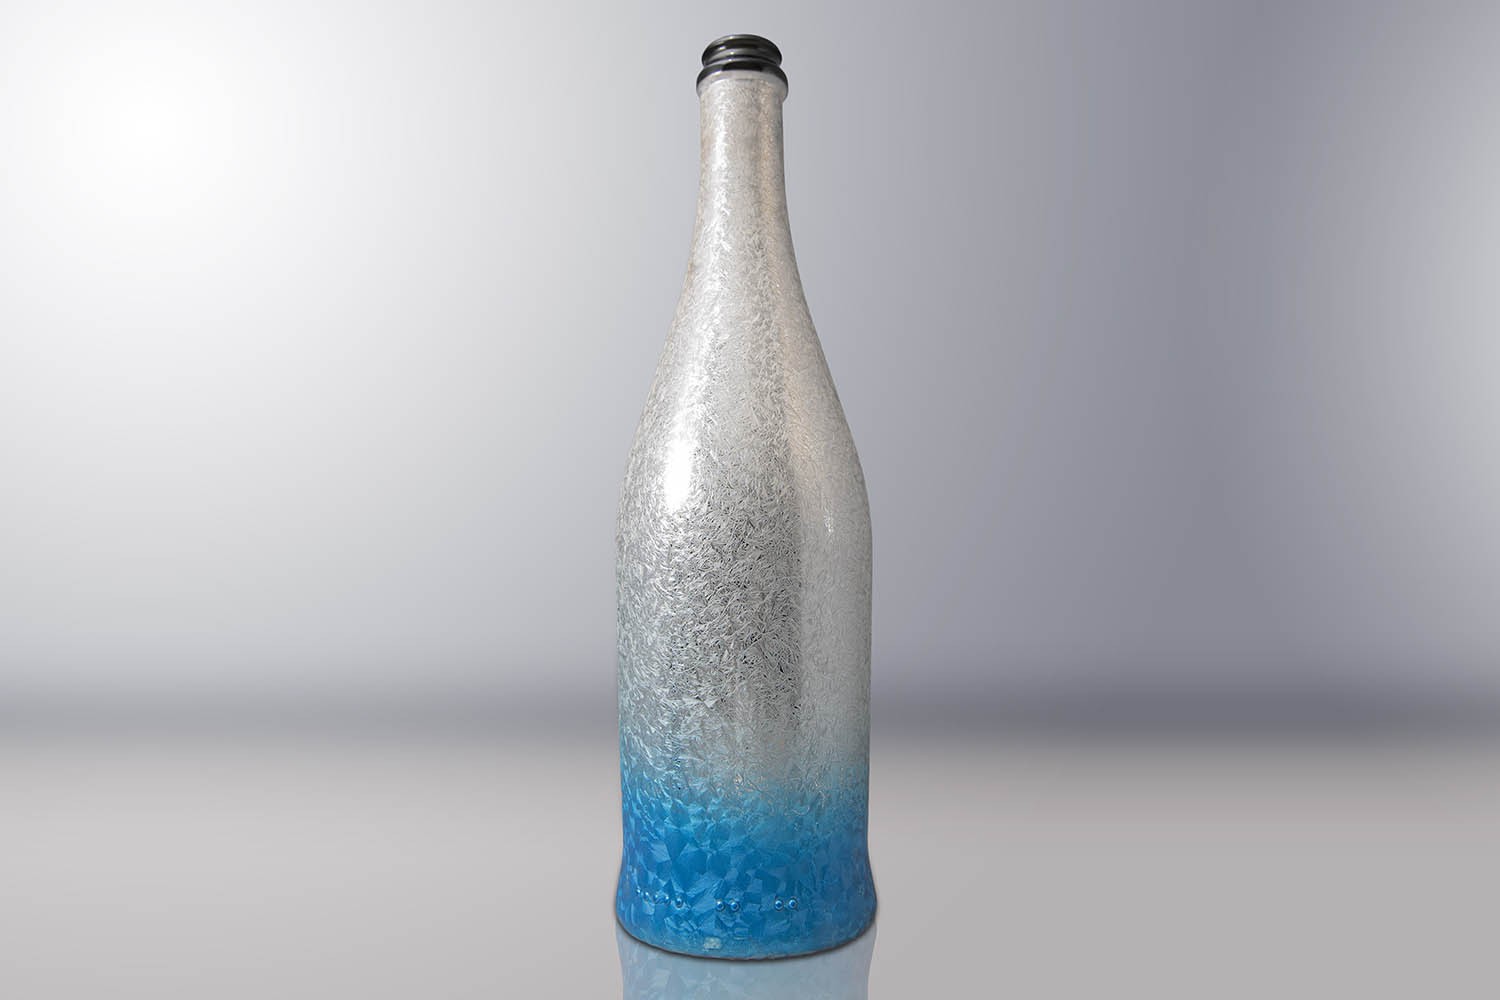 Verniciatura,-bottiglia-verniciata-satinata-effetto-ghiaccio-home-box